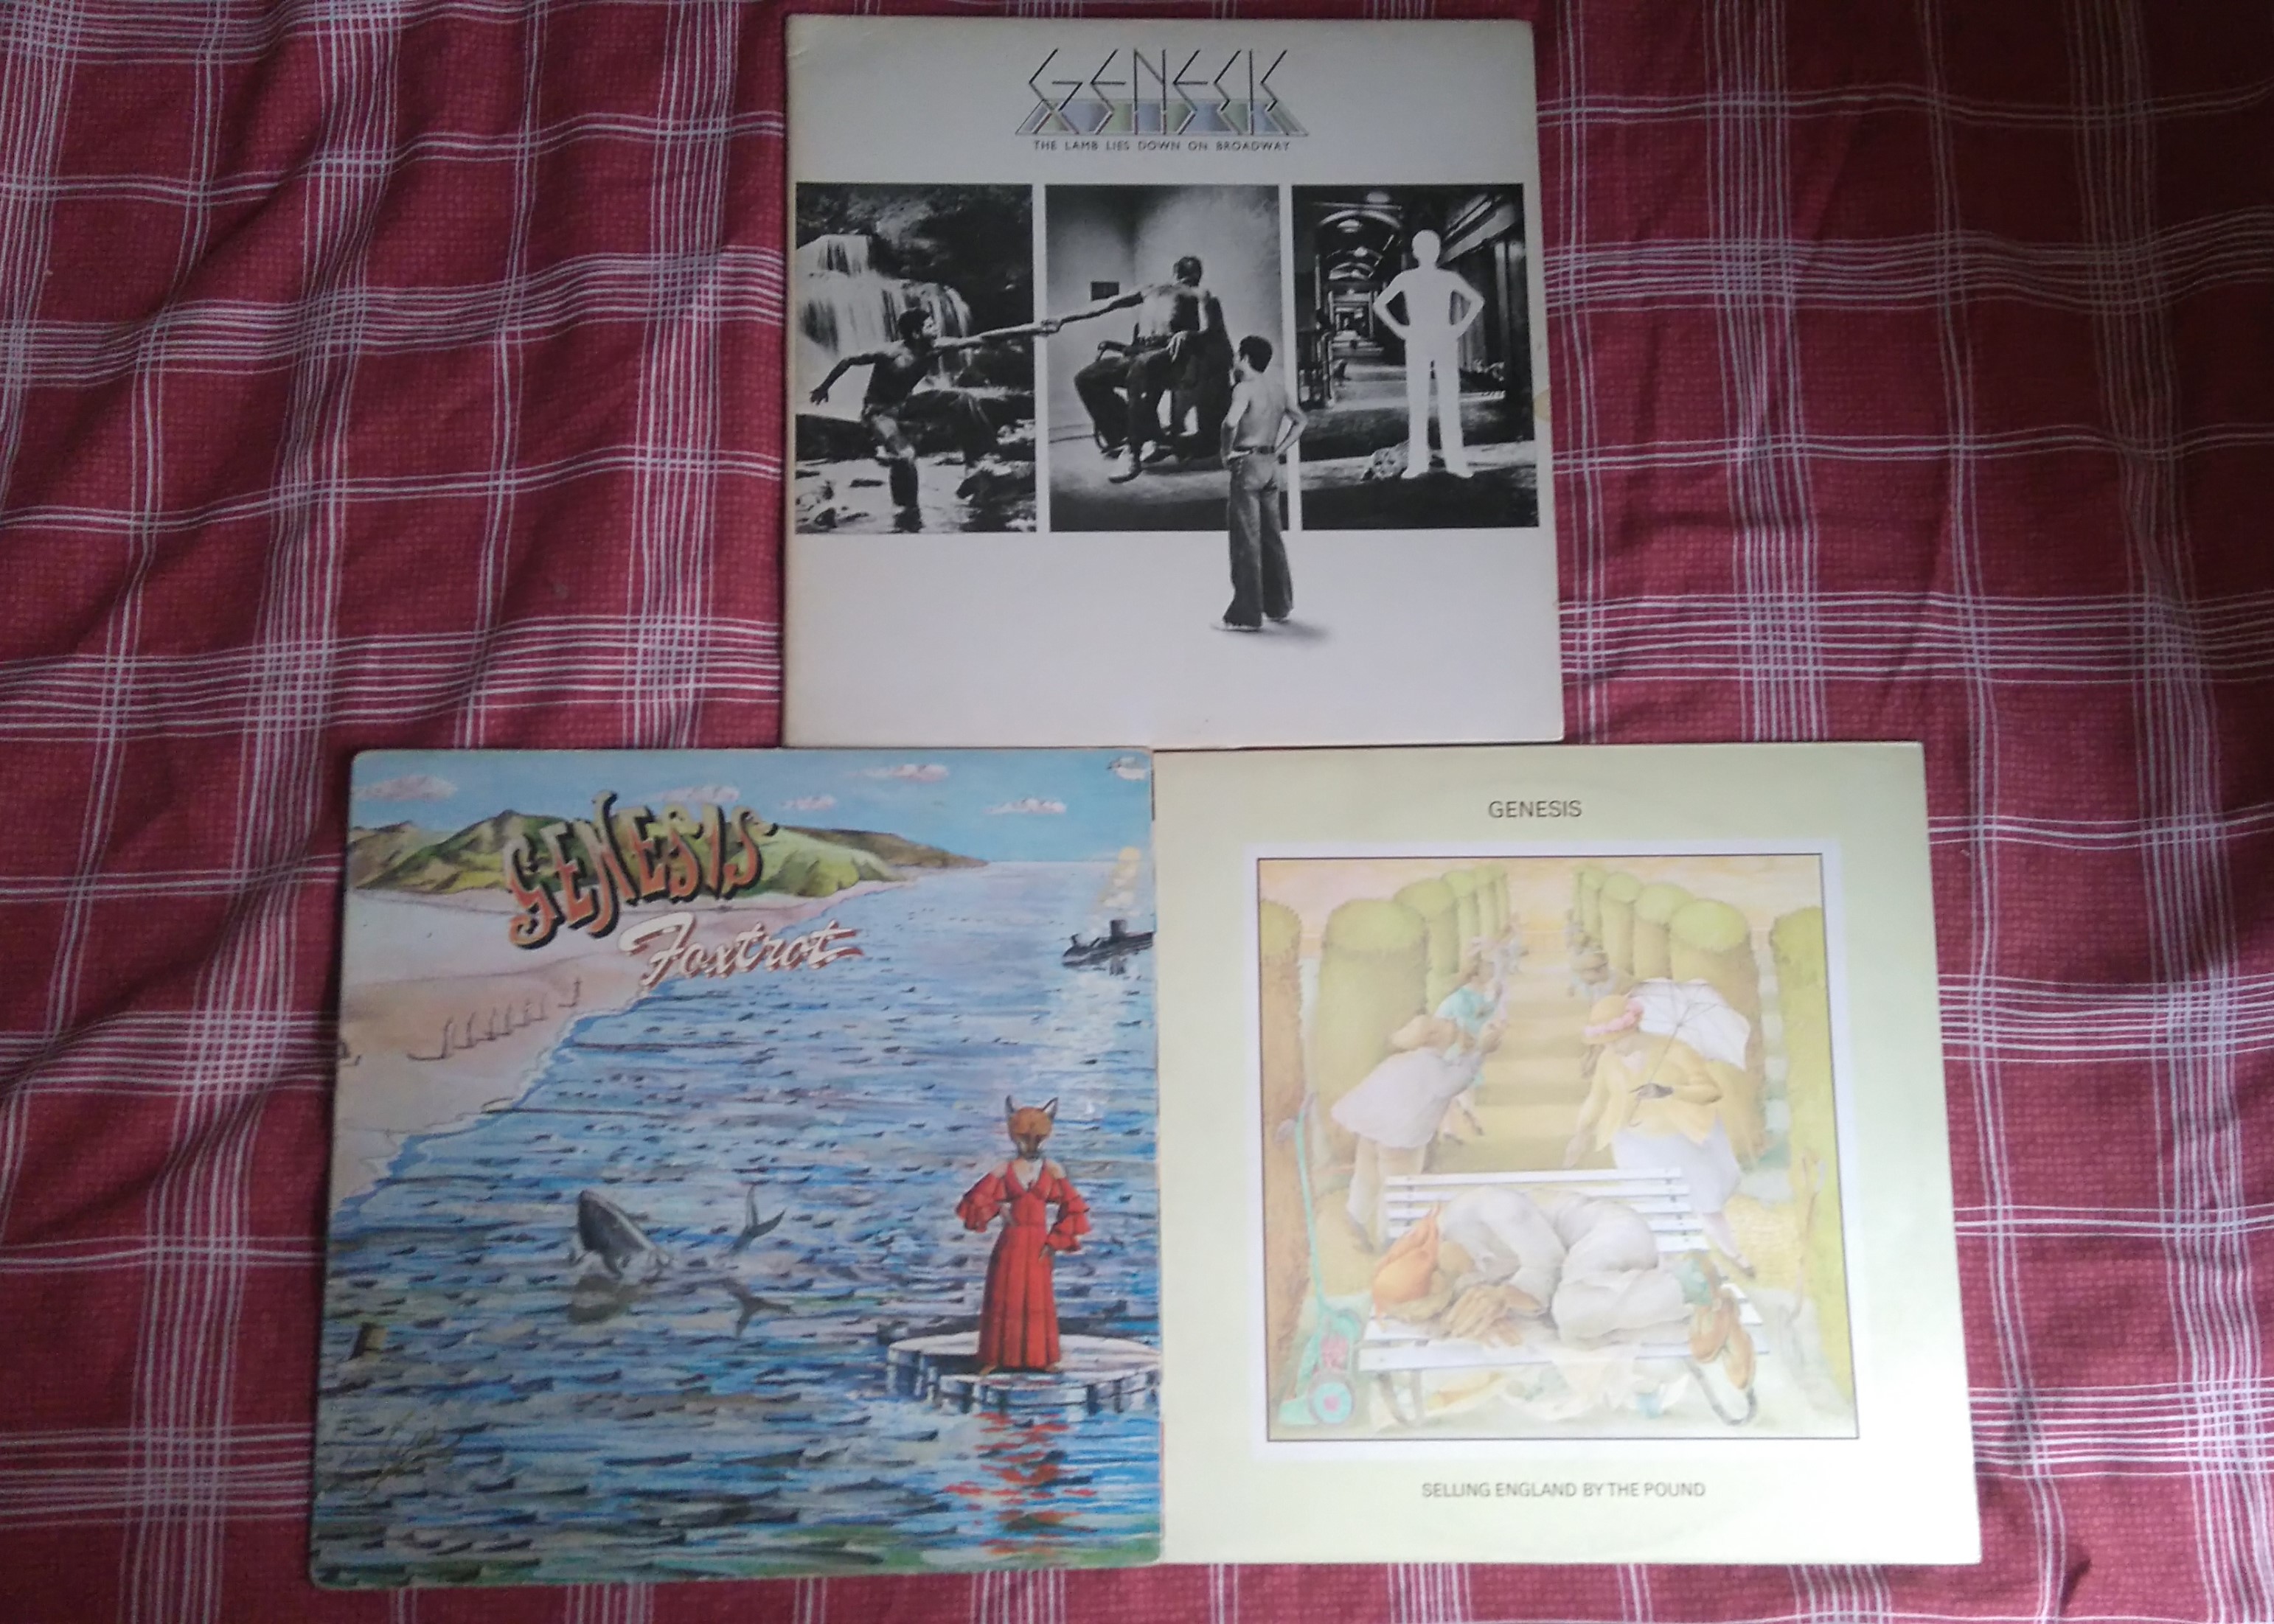 Genesis Vinyl.JPG